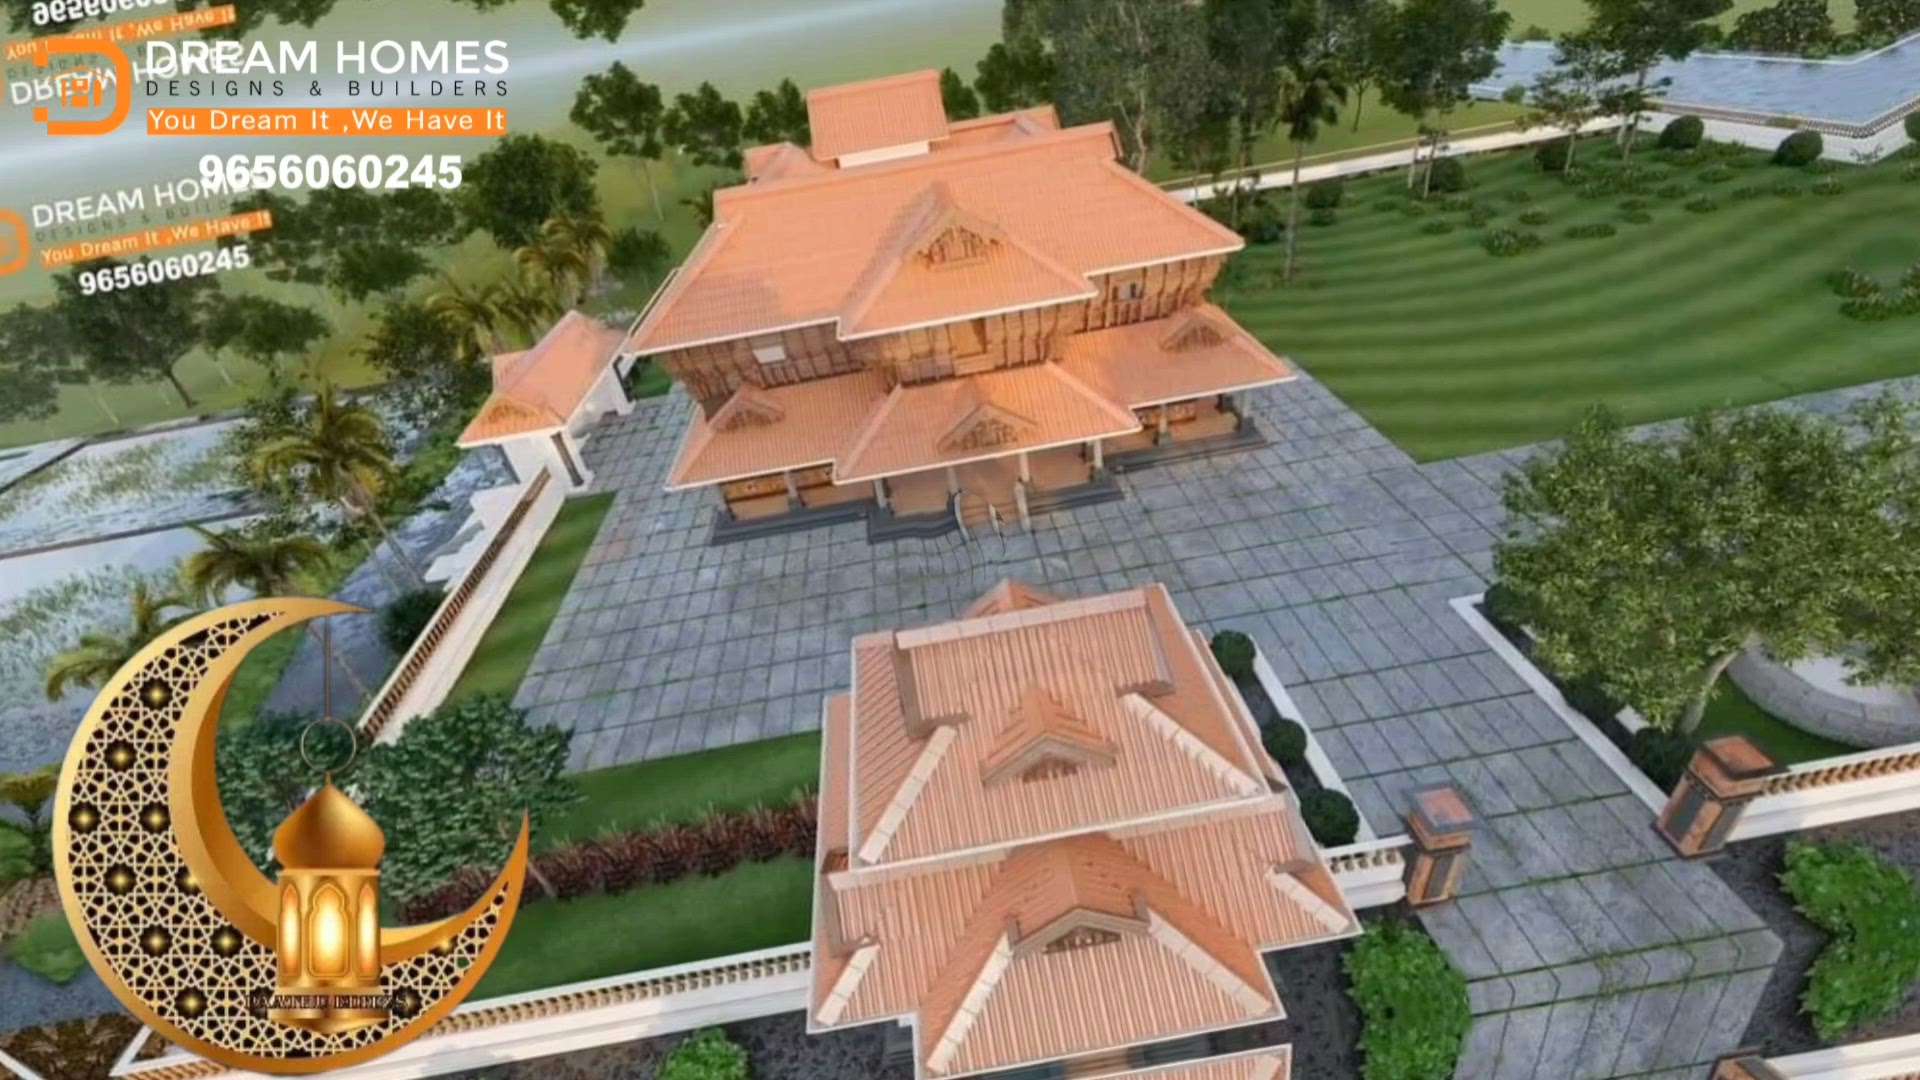 💞സ്നേഹത്തിന്റെയും നന്മയുടെയും നിലാവ് എങ്ങും പരക്കട്ടെ🎉💞
🙏എല്ലാ പ്രിയപ്പെട്ടവർക്കും ഞങളുടെ സ്നേഹത്തിന്റെയും സഹോദര്യത്തിന്റെയും ഹൃദയം നിറഞ്ഞ ചെറിയ പെരുന്നാൾ ആശംസകൾ സ്നേഹത്തോടെ നേരുന്നു🎉

DREAM HOMES DESIGNS & BUILDERS "
            You Dream It, We Have It'

       "Kerala's No 1 Architect for Traditional Home"
A beautiful traditional structure  will be completed only with the presence of a good Architect and pure Vasthu Sastra.

Dream Homes will always be there whenever we are needed.

We are providing service to all over India 
No Compromise on Quality, Sincerity & Efficiency.

#traditionalhome #traditional

For more info
www.dreamhomesbuilders.com
For more info 
9656060245
7902453187